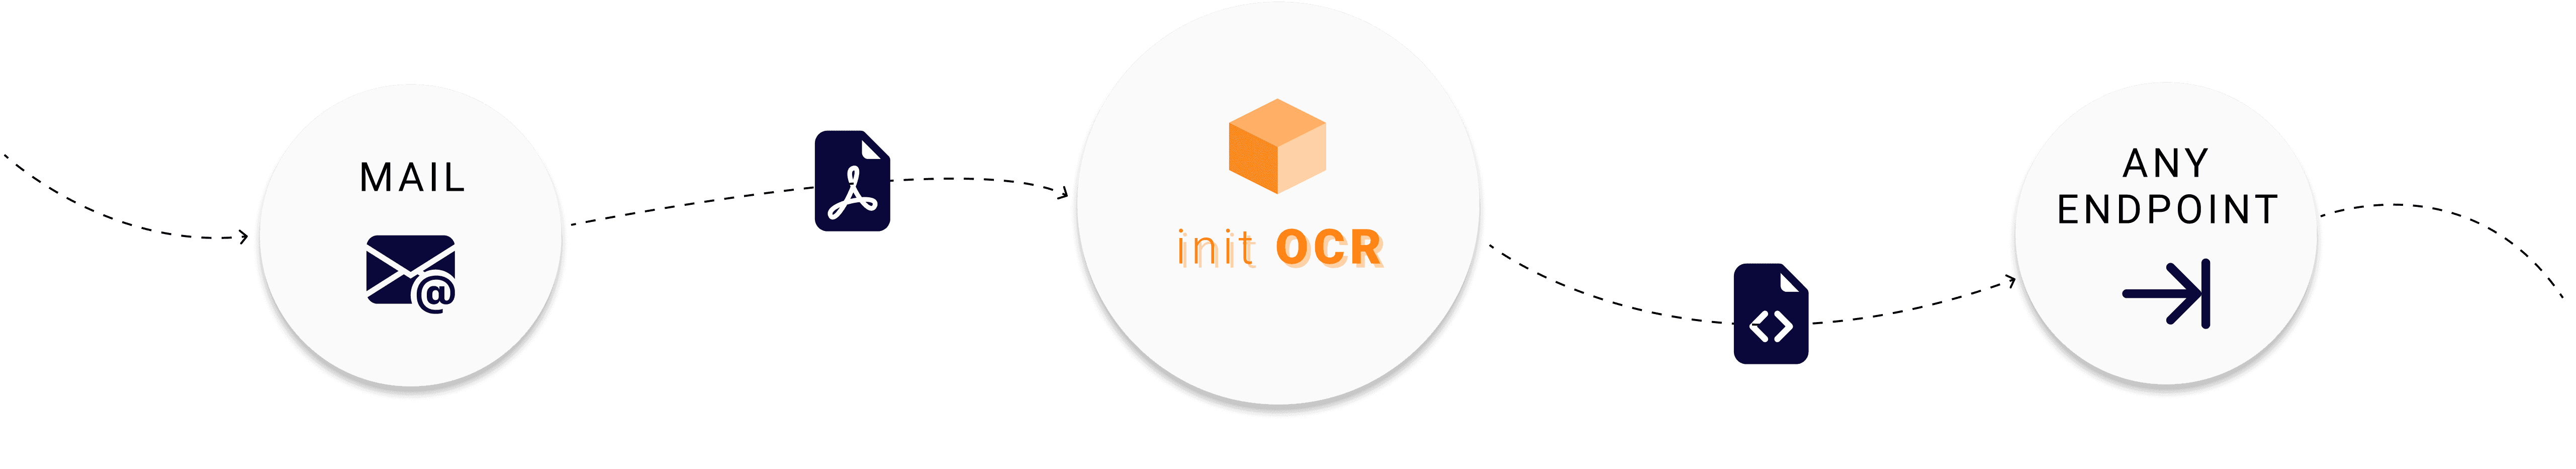 init OCR process illustration